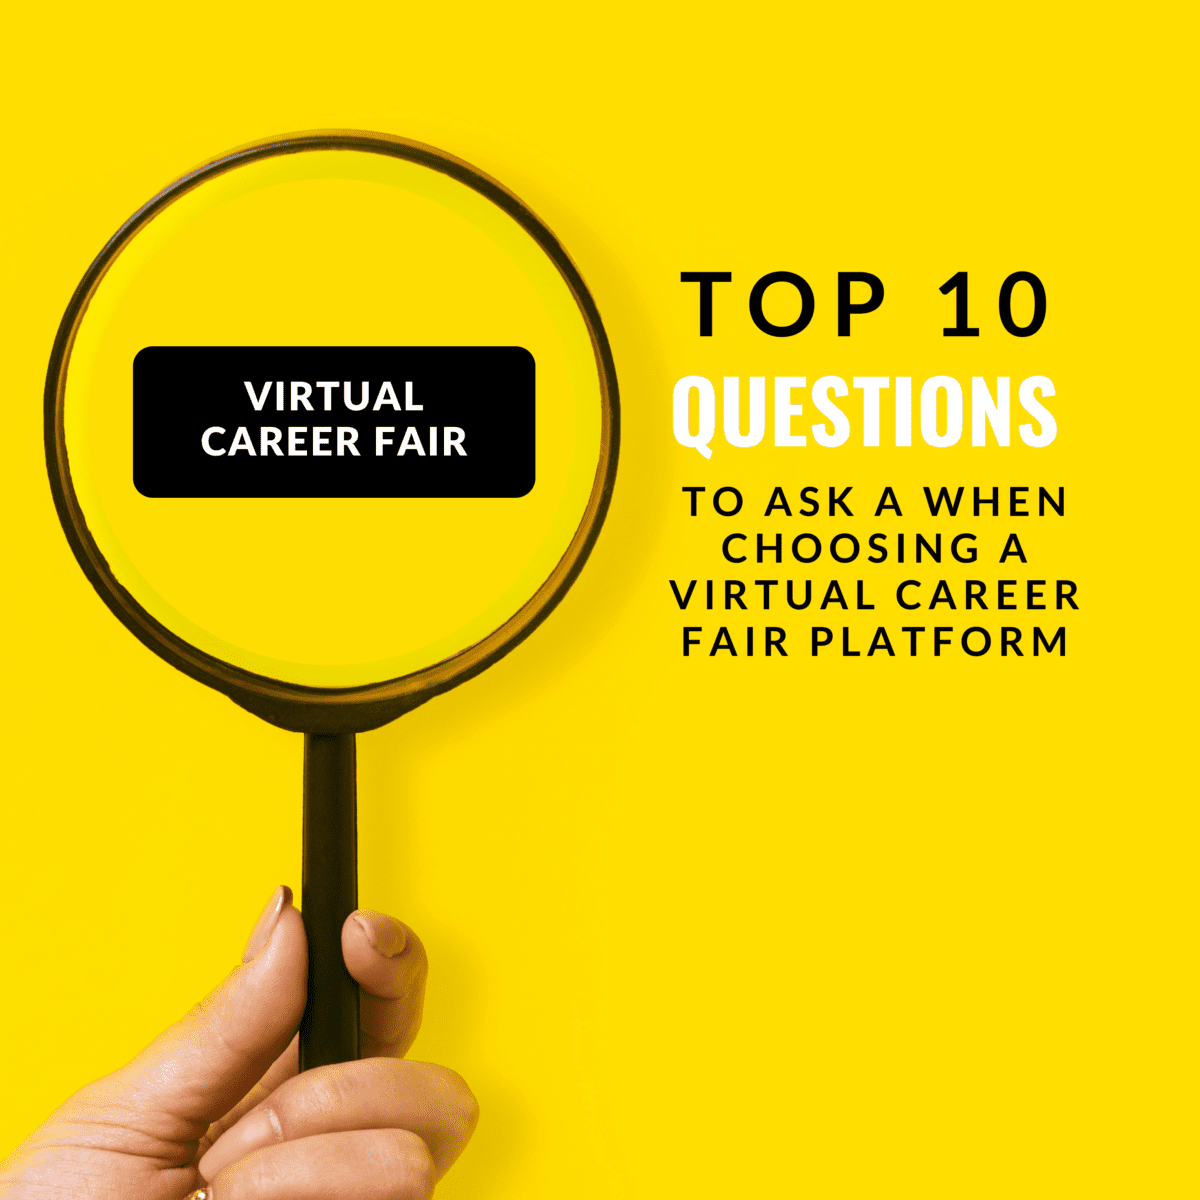 Premier Virtual - Top 10 Questions to Ask When Choosing a Virtual Career Fair Platform